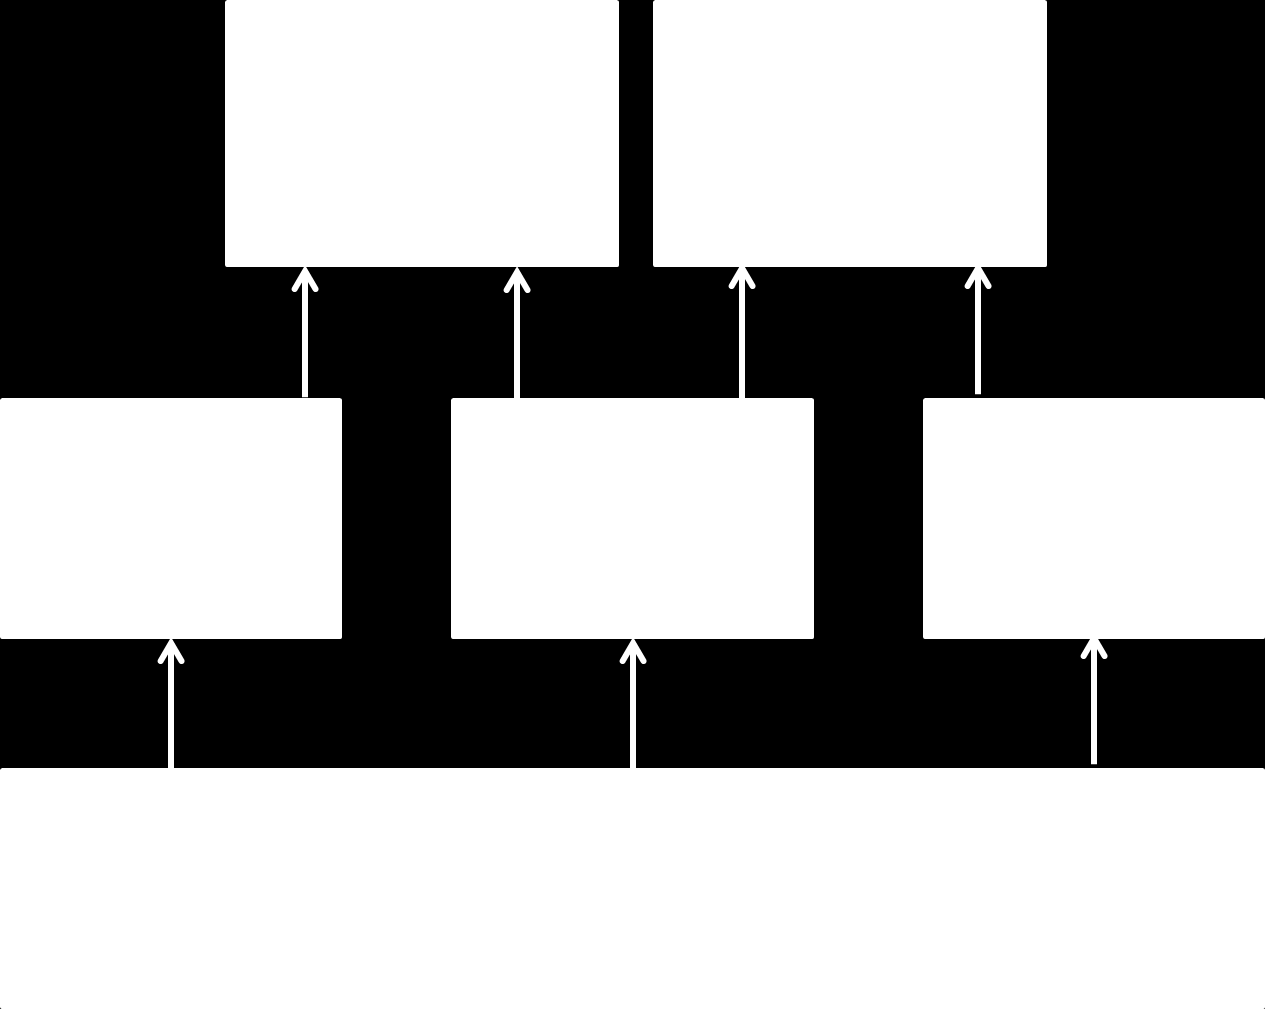 Yeagerin, Fisherin ja Sheartonin kehittämän S-M-A-R-T-mallin mukaan vahvuuksille rakentaminen toimii viiden periaatteen mukaisesti (2011, 65).